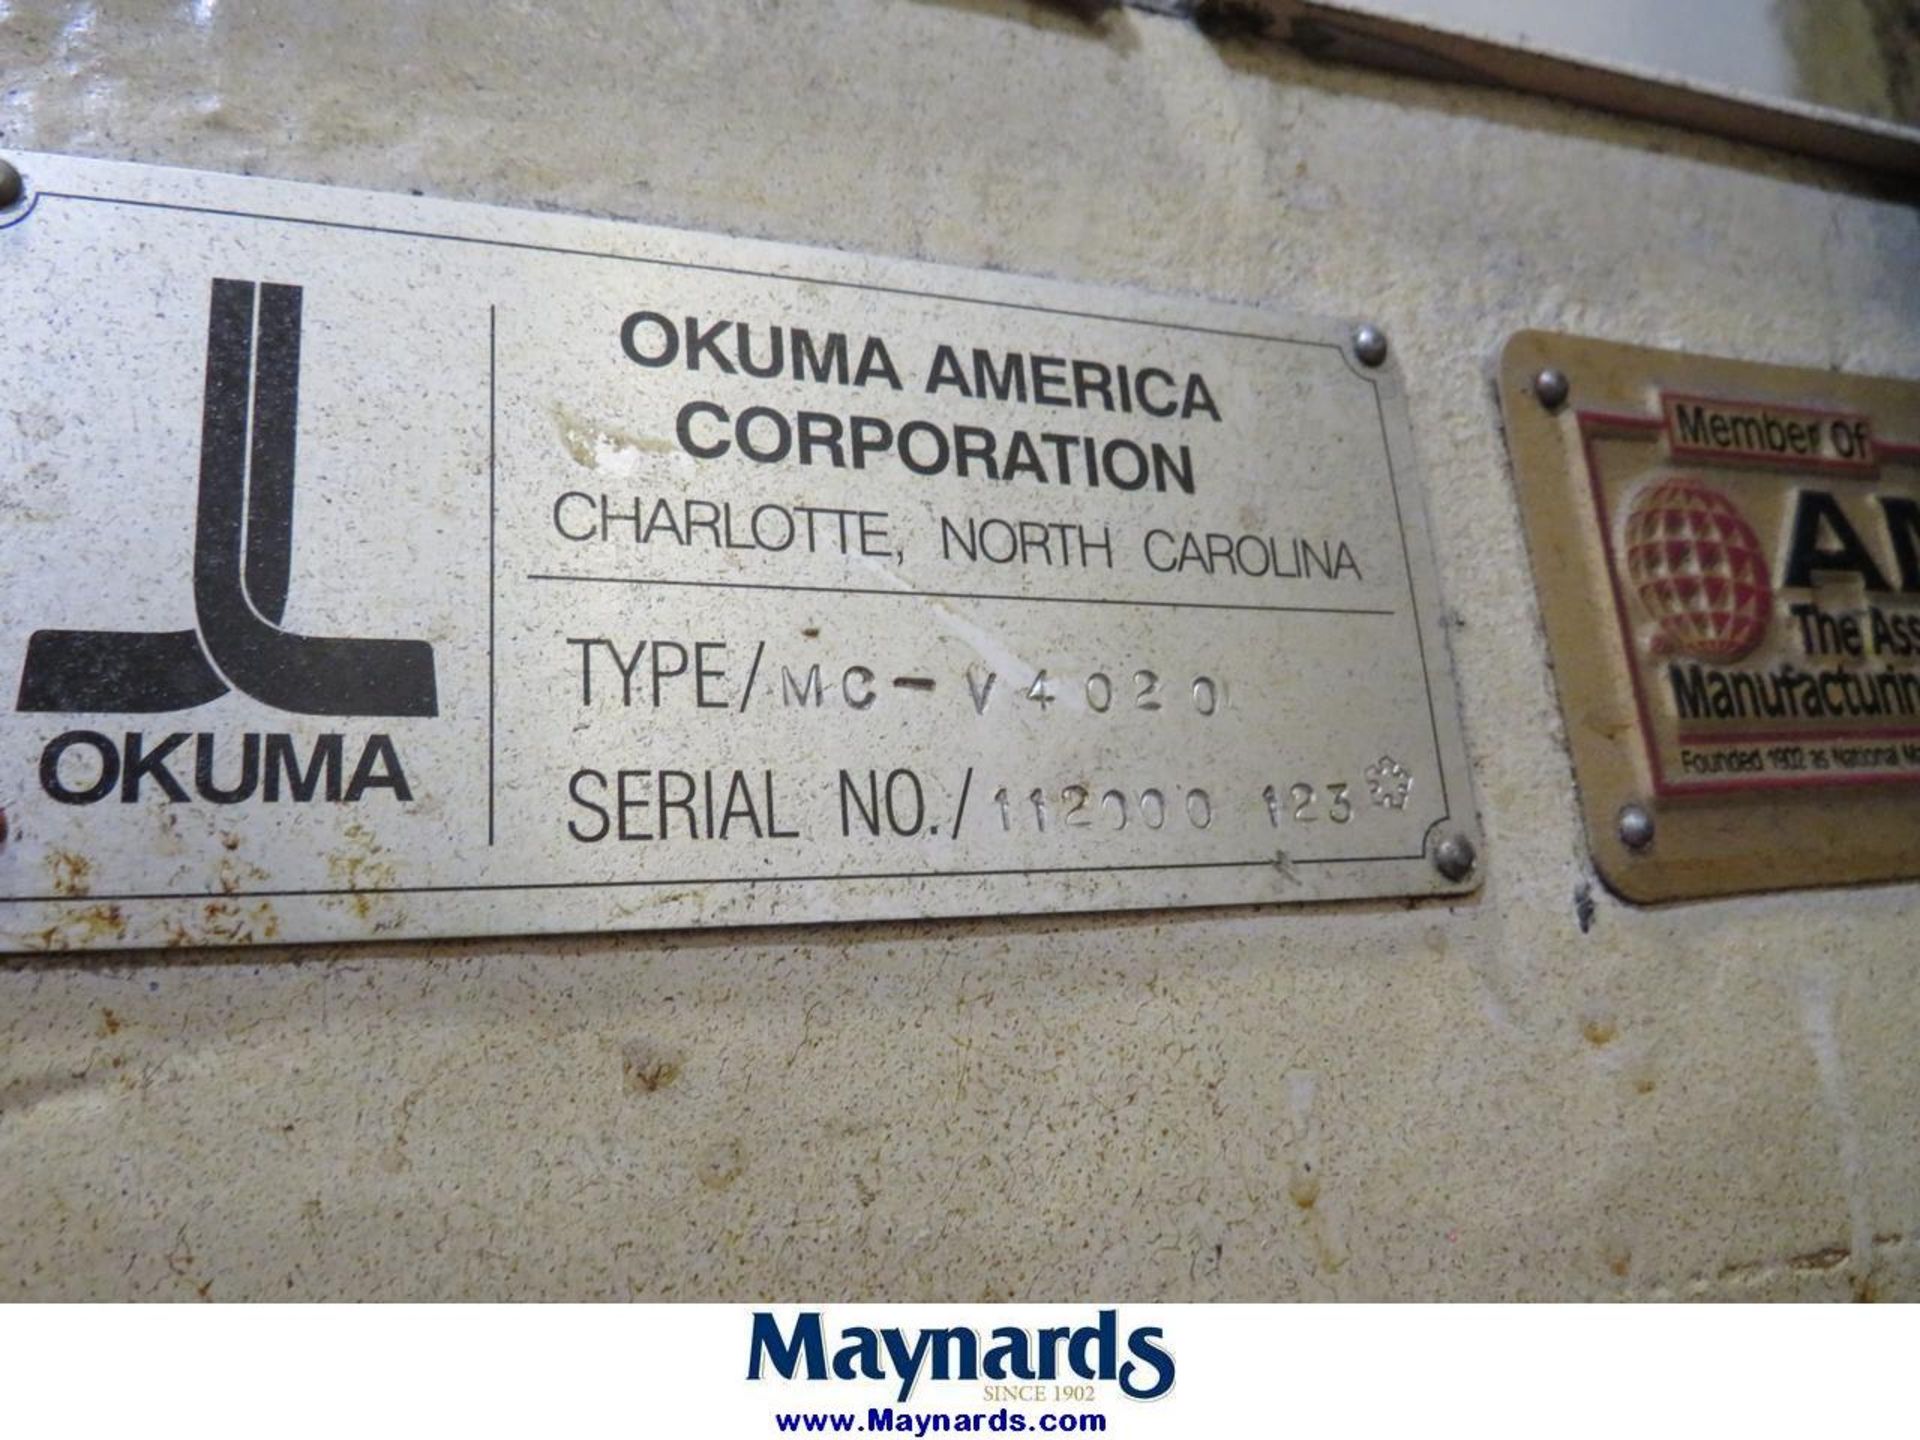 2000 Okuma MC-V4020 CNC Vertical Machining Center - Image 9 of 12